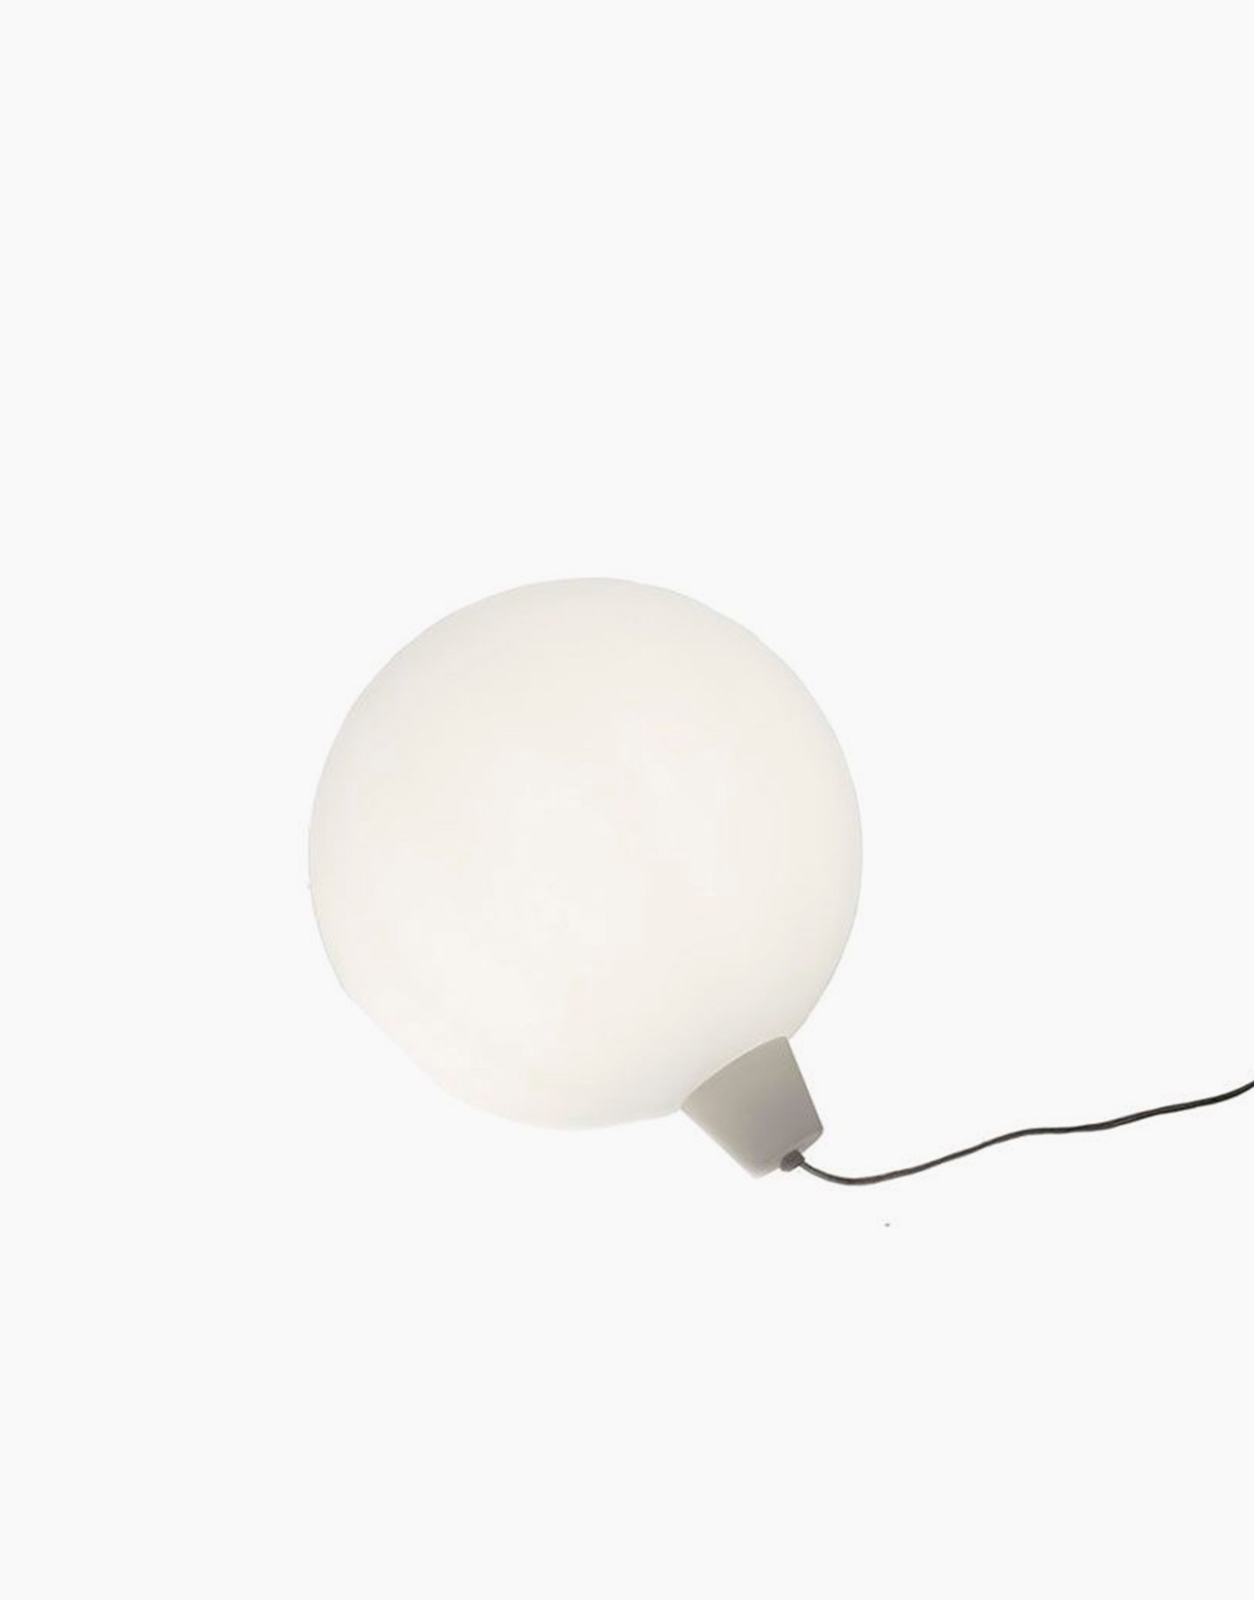 ACQUAGLOBO Lampe flottante d'extérieur Ø70cm Blanc Slide - LightOnline